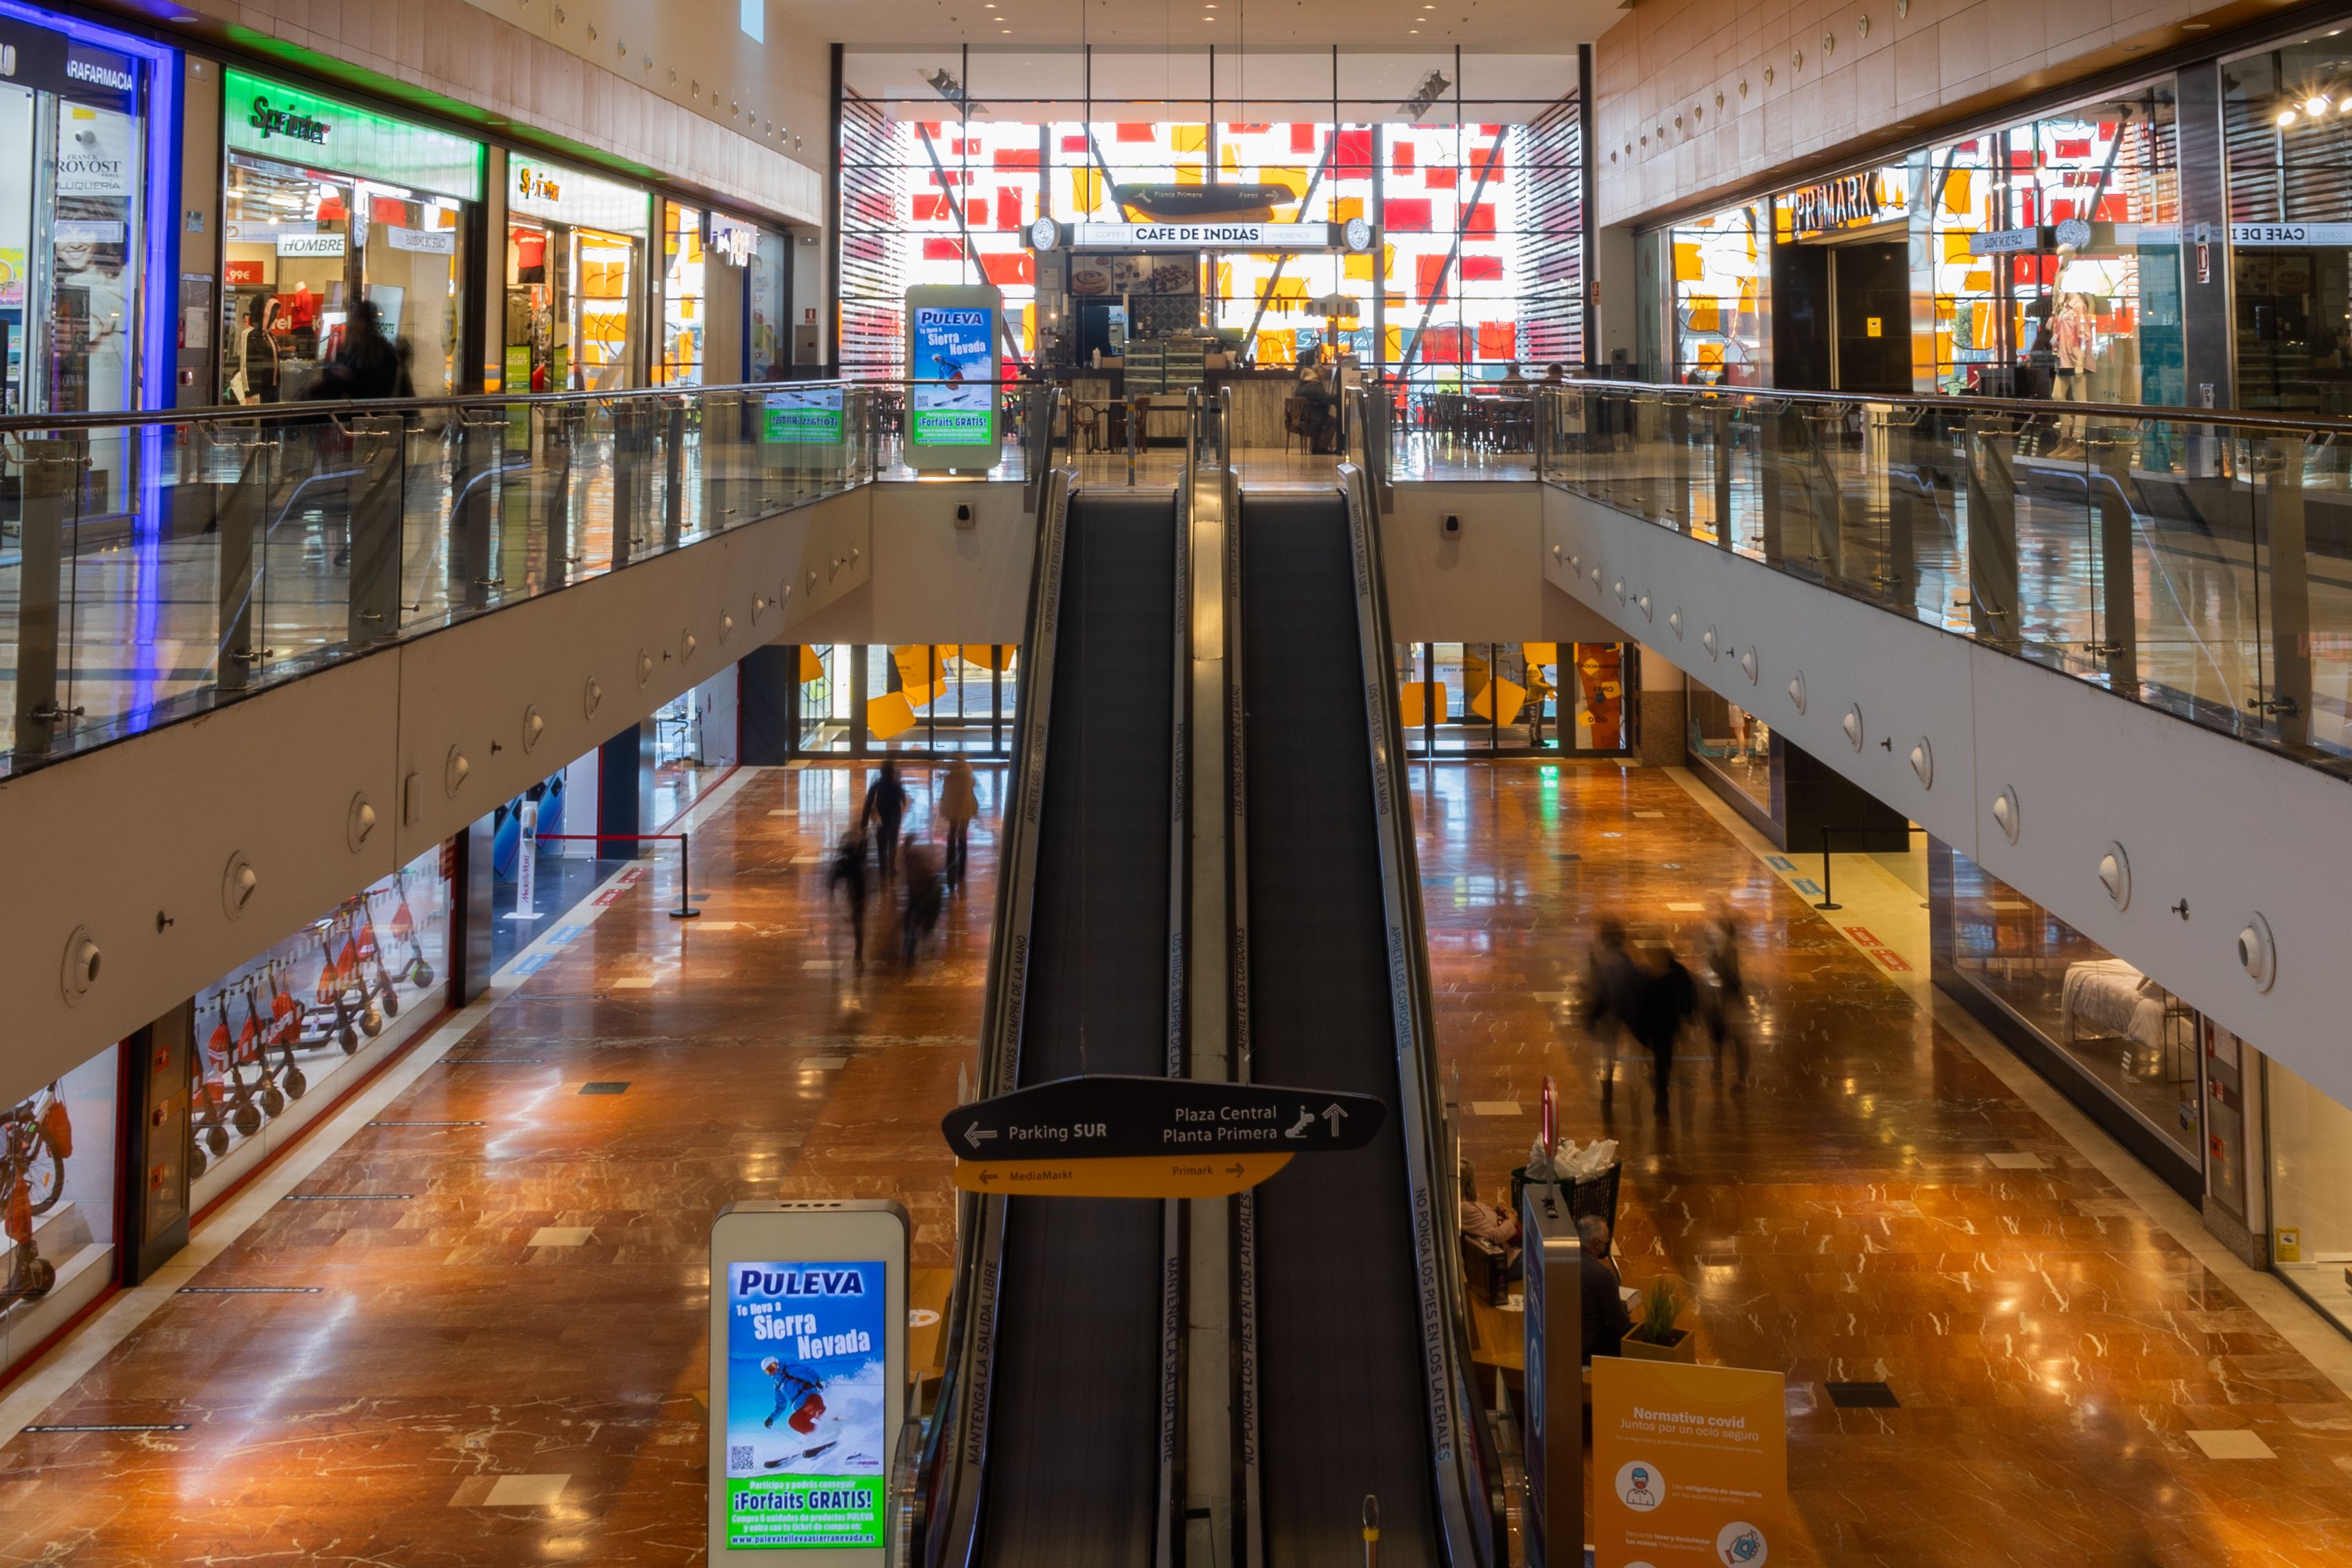 Centro comercial Área Sur en una imagen reciente. Estos son los horarios especiales de centros comerciales y supermercados en el puente de 1 de mayo